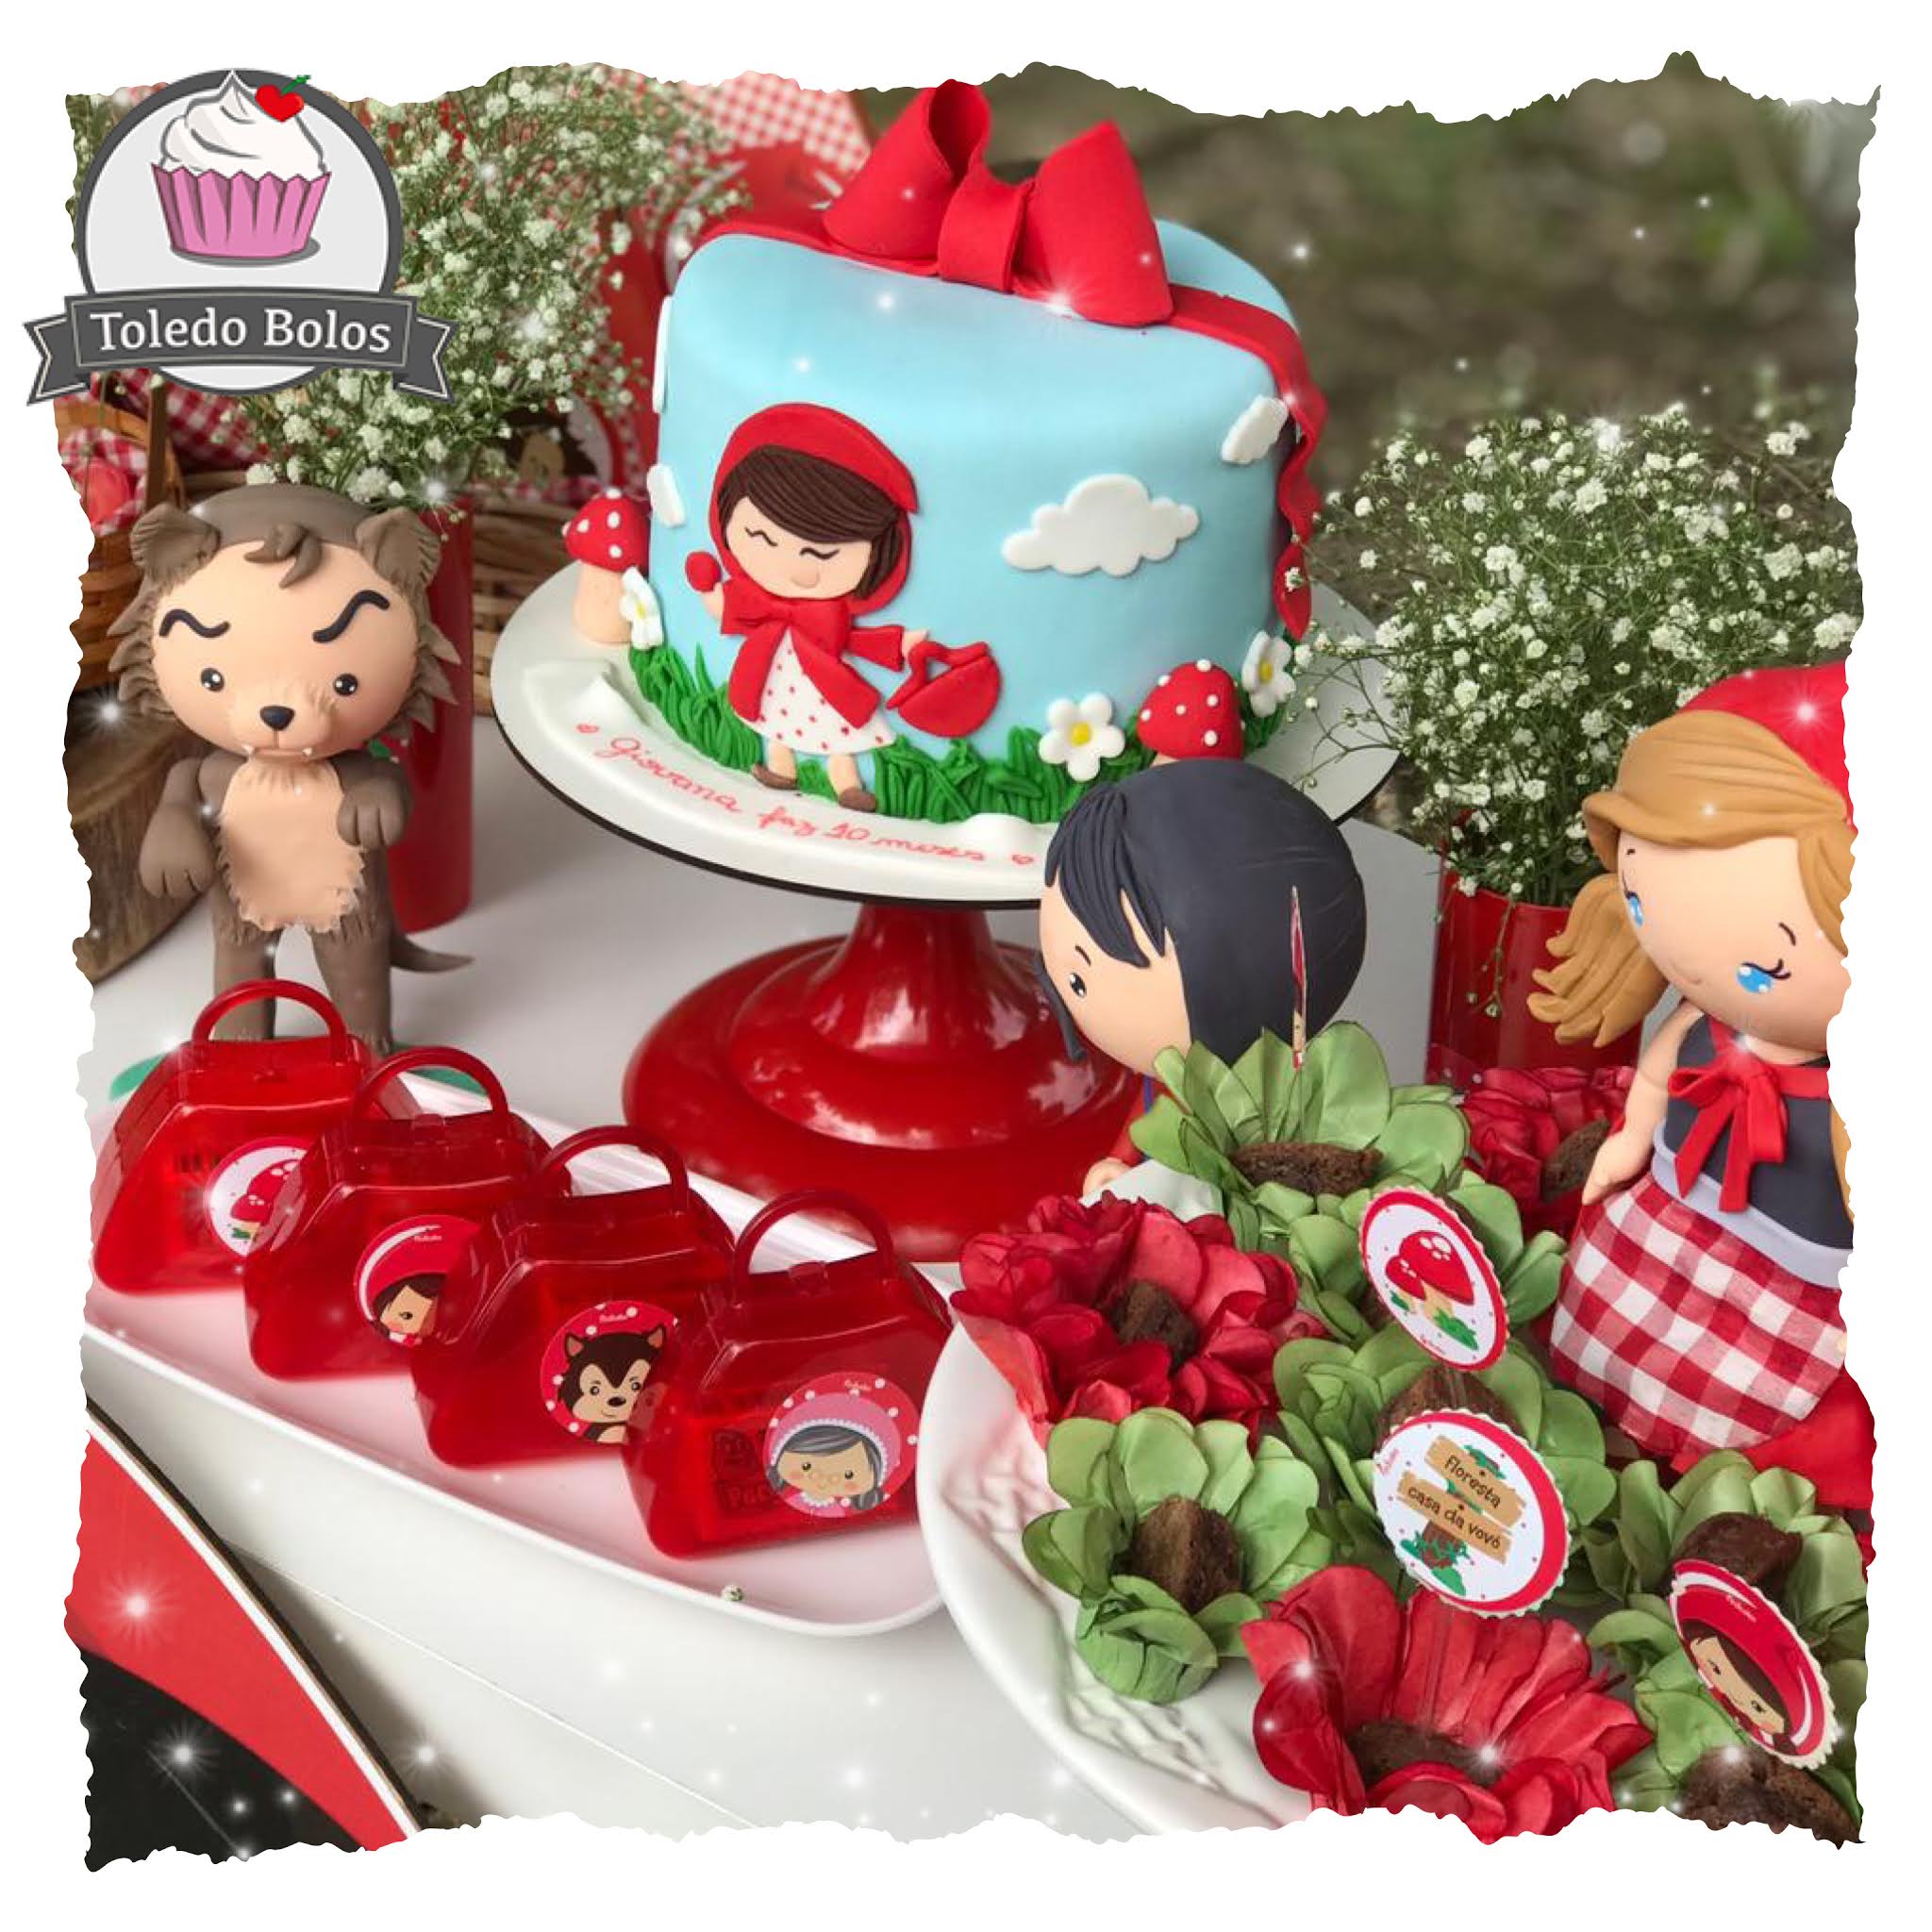 Lety's bolos e doces - Bolo mesversario da chapeuzinho vermelho